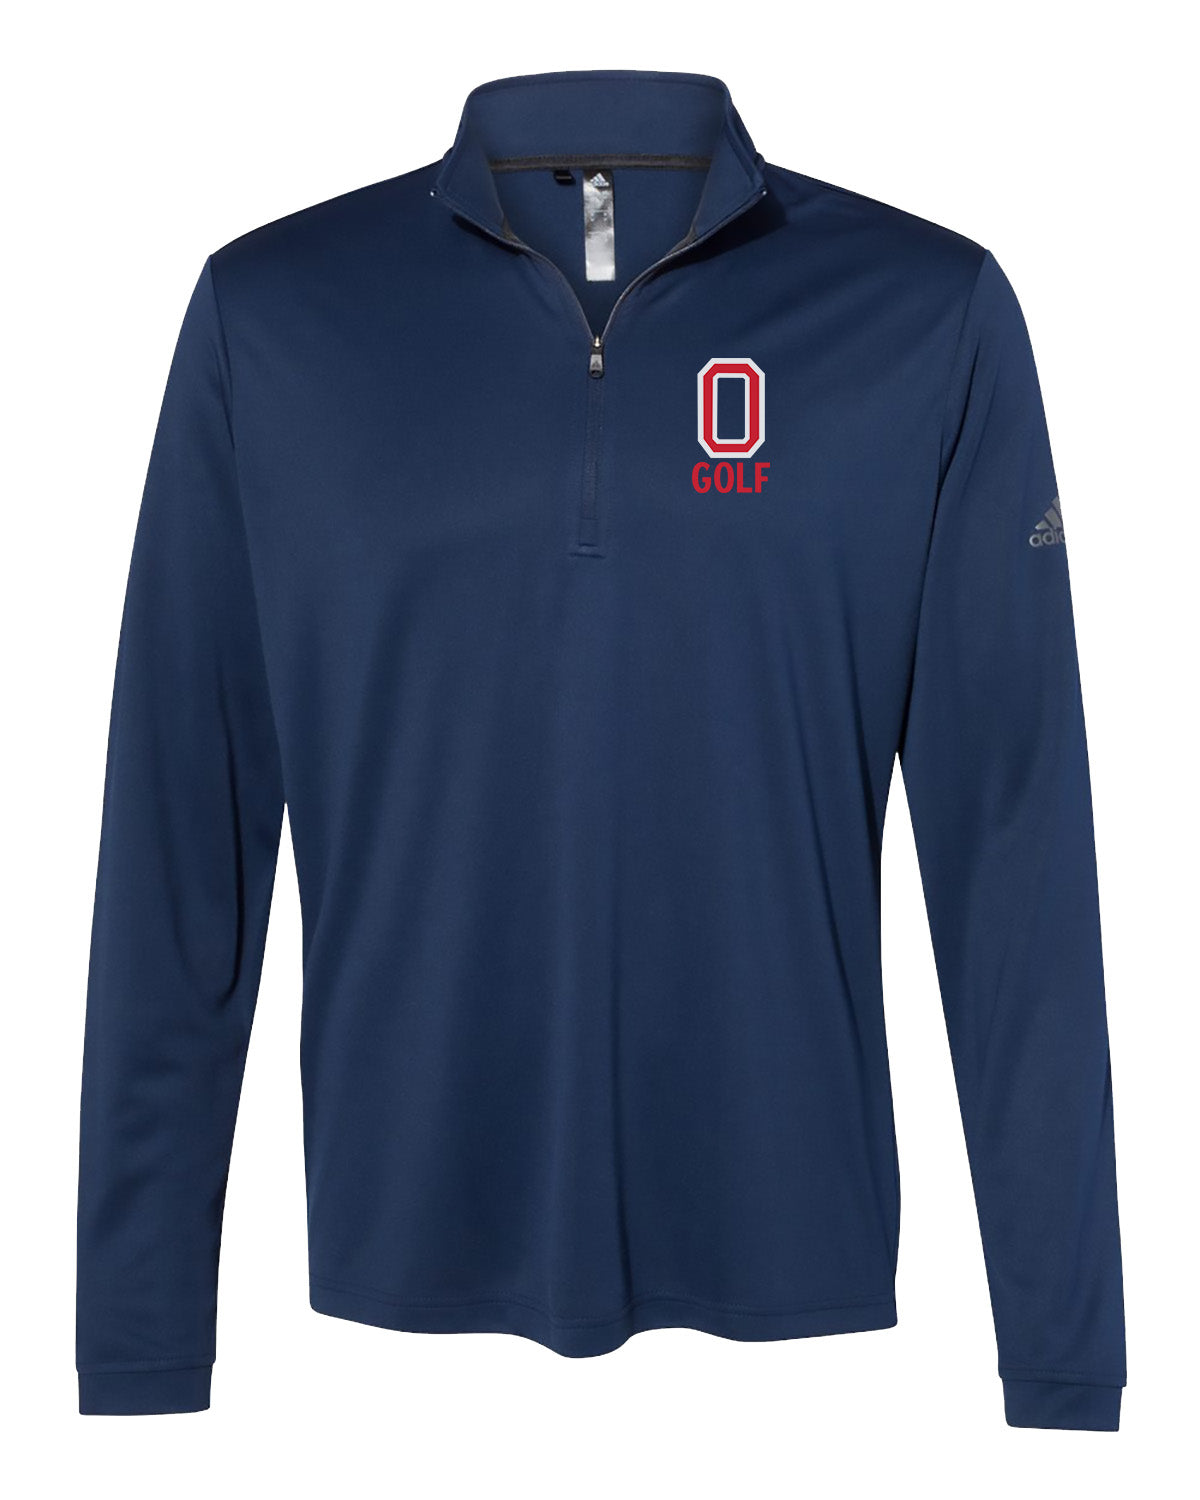 Orono Golf // Men's Pullover - Adidas